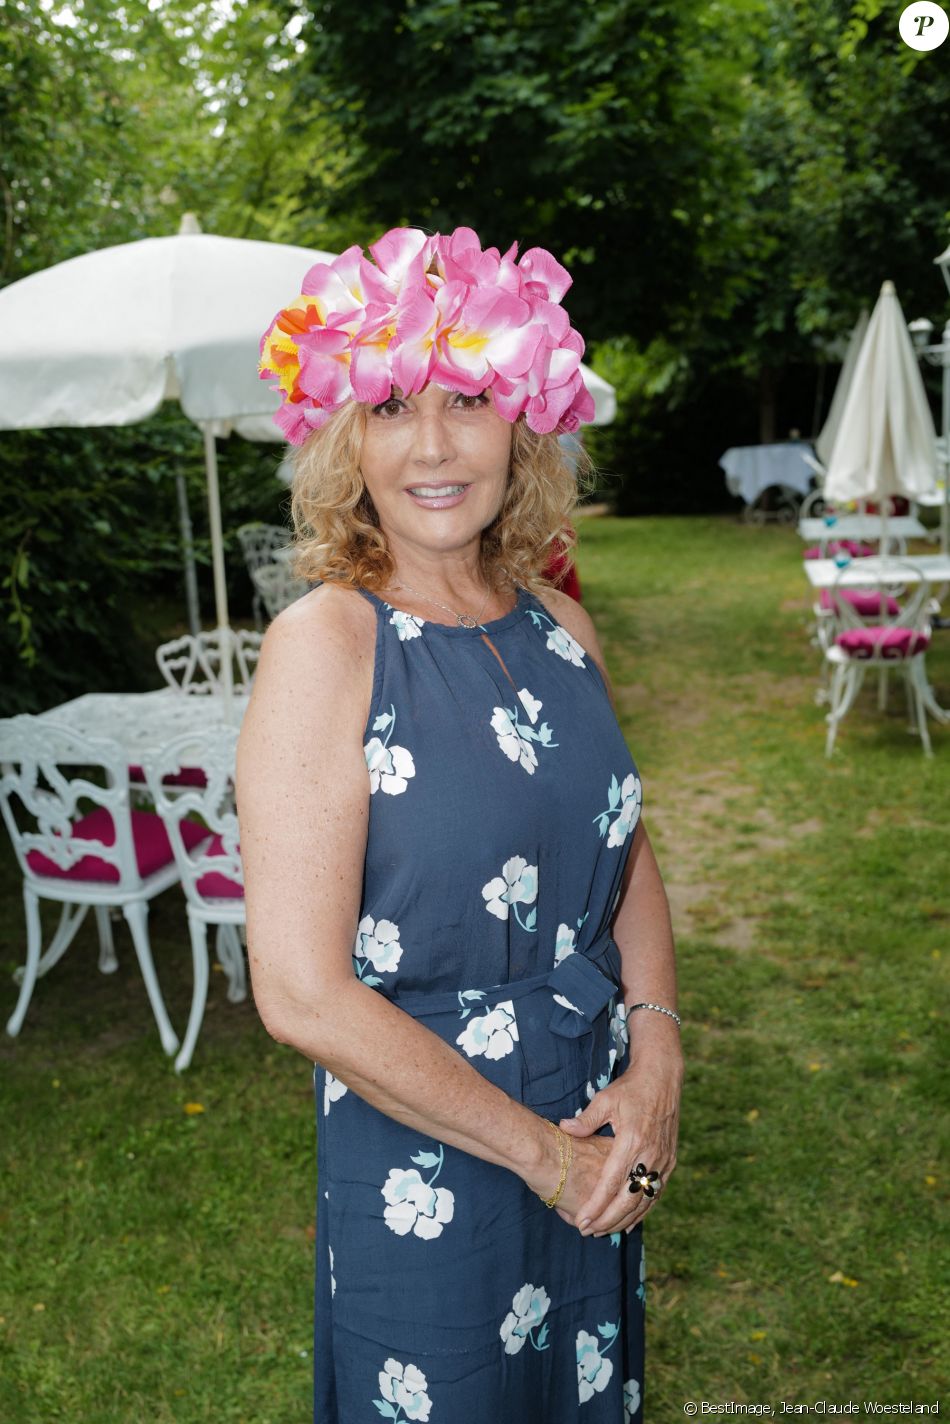 Exclusif - Fabienne Amiach - Garden party organisée par Babette de Rozières chez elle à Maule le 30 juin 2019. © Jean-Claude Woesteland/Bestimage